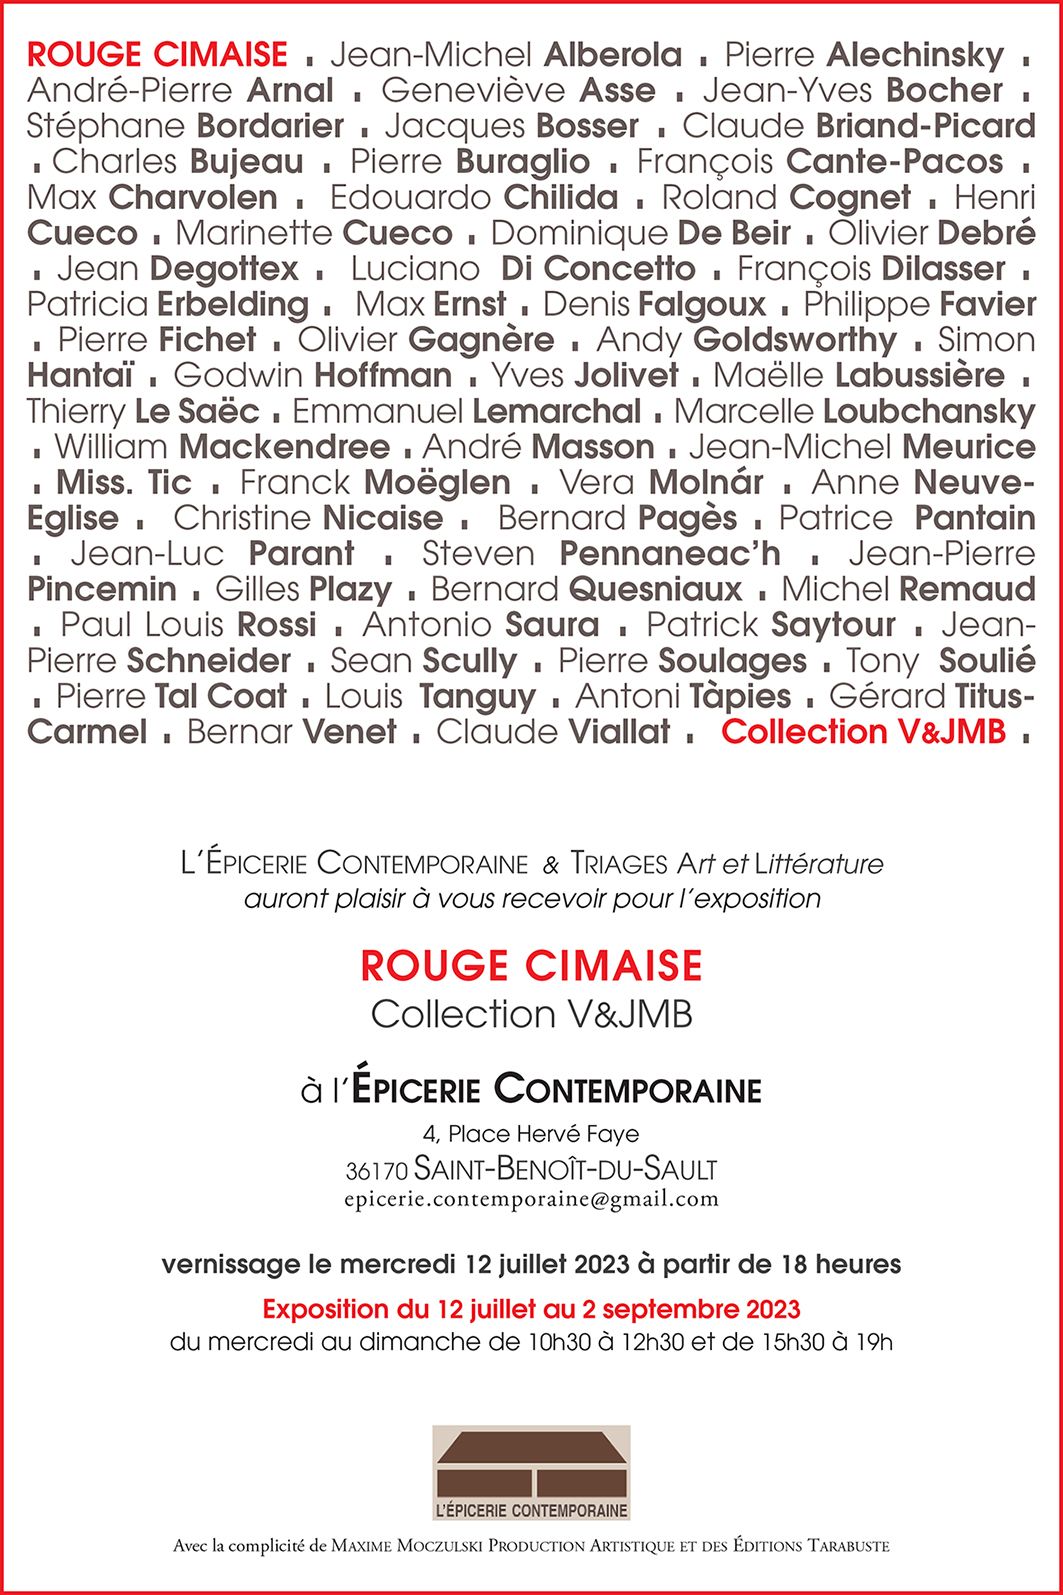 Exposition-Rouge-Cimaise-Collection-V-JMB-Epicerie-Contemporaine